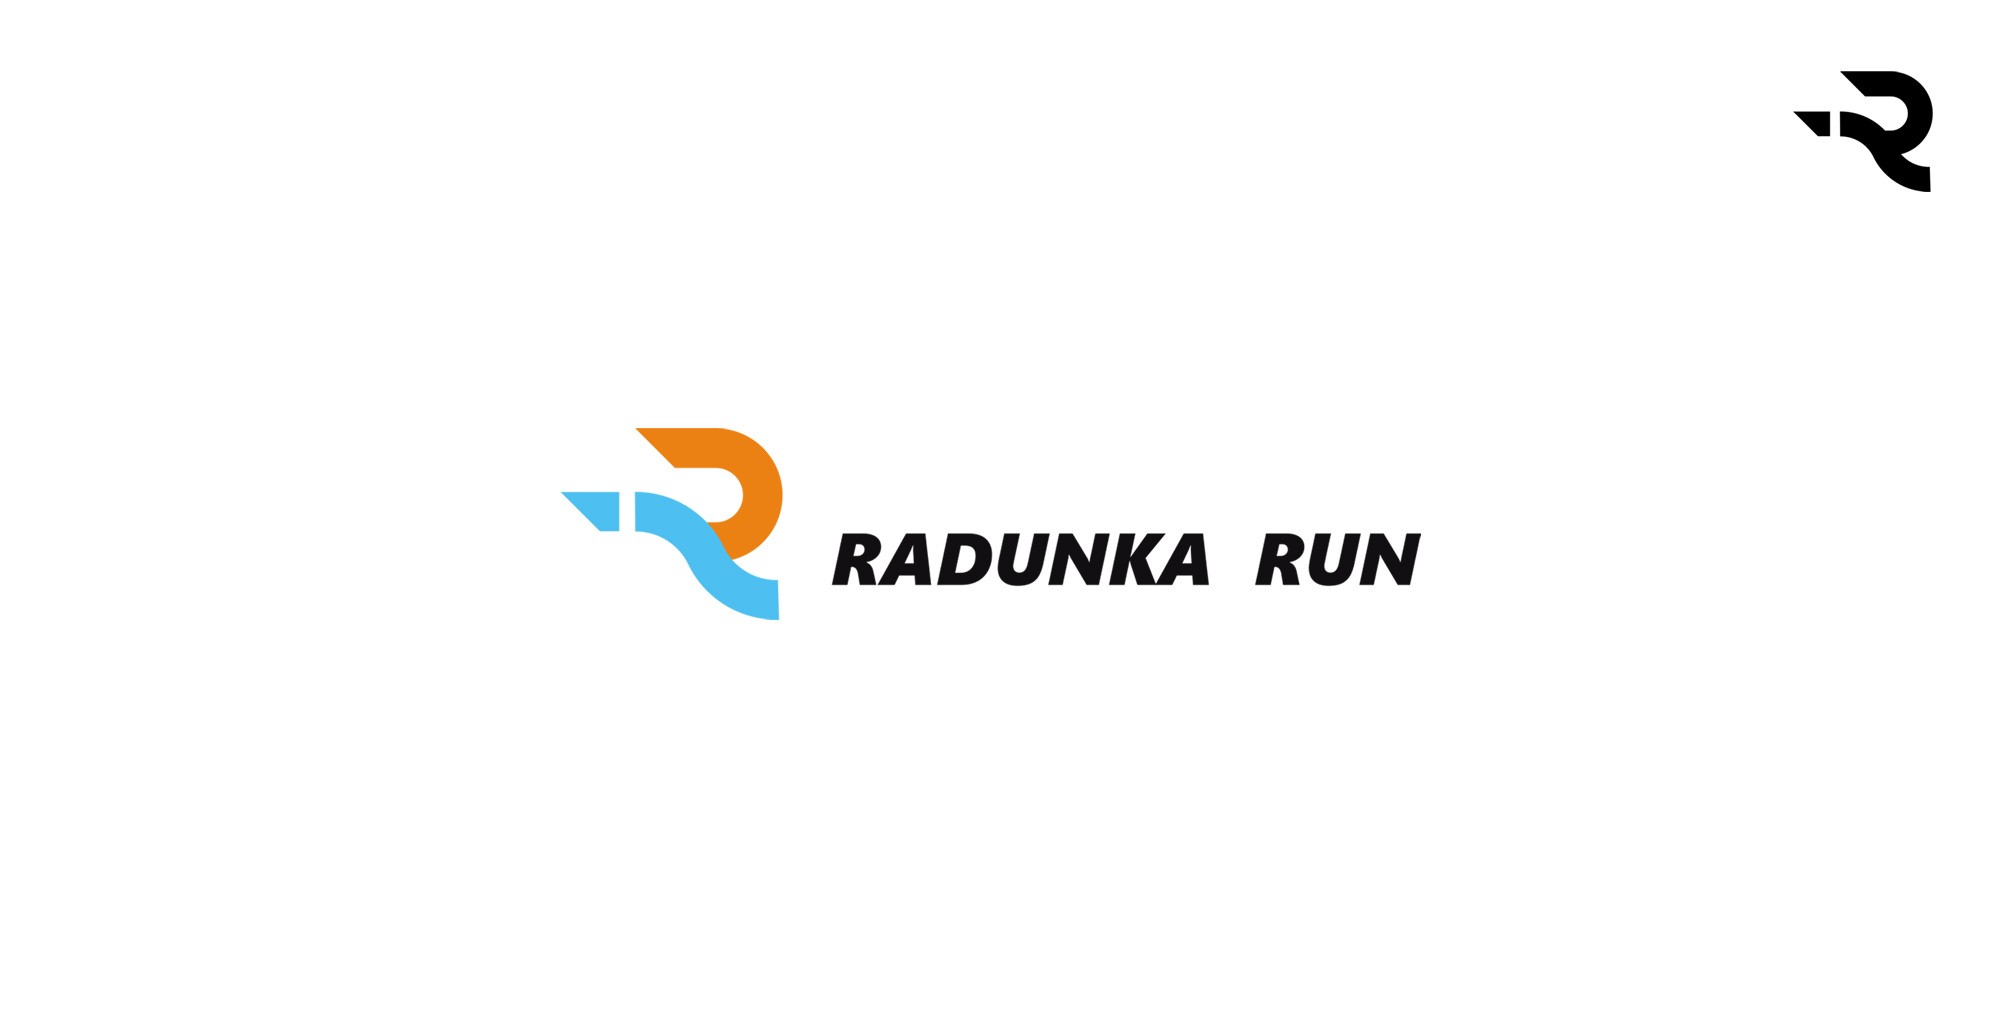 Radunka Run - kolbudy. Shadowart - projekt logo, koszulki, bluzy, plakaty, ulotki, dyplomy.